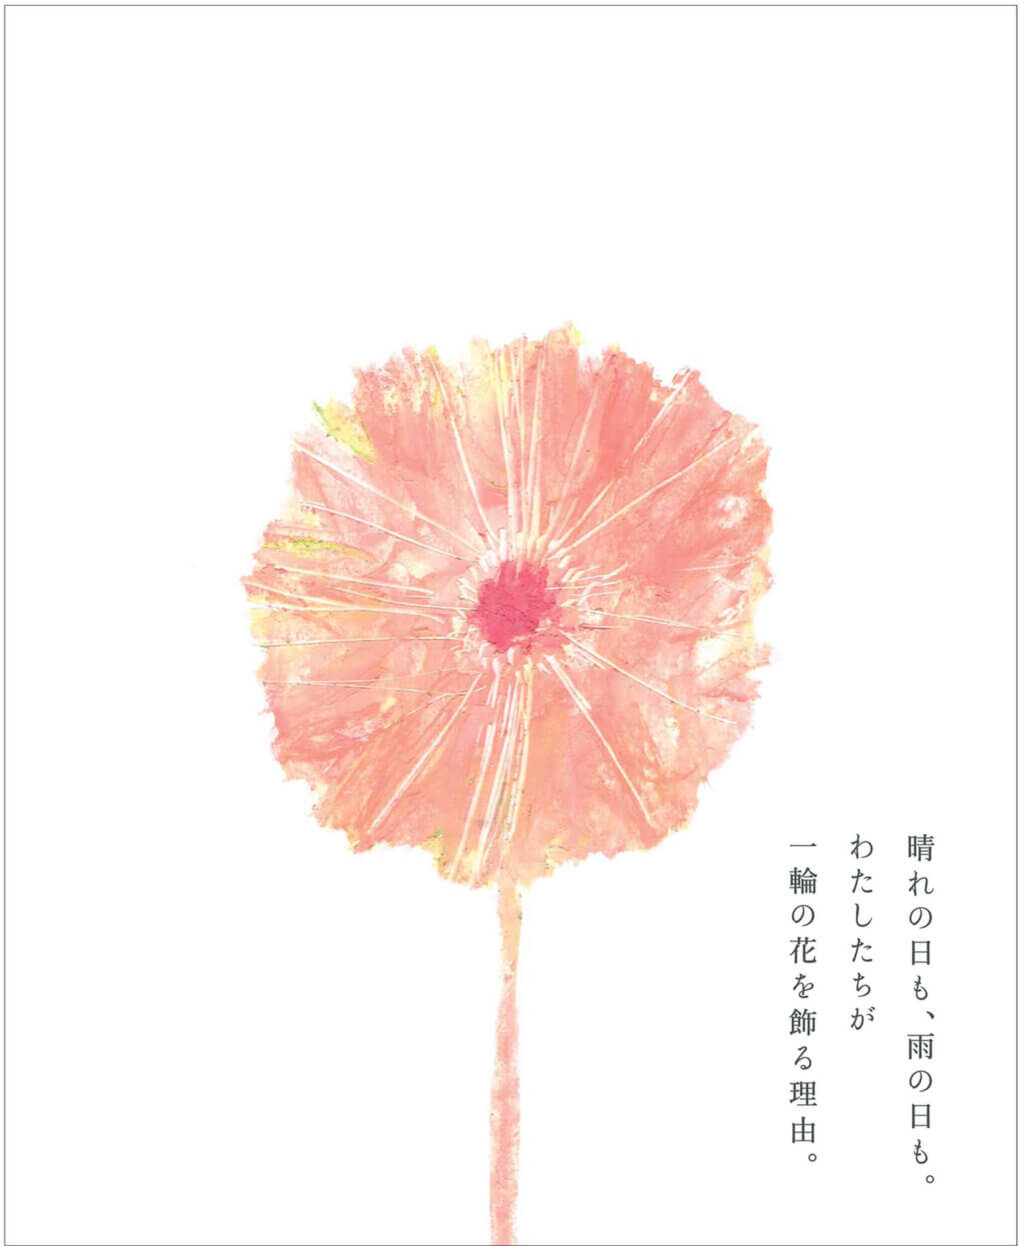 パンフレットイラスト 北総育成園2017年「ピンクの花」